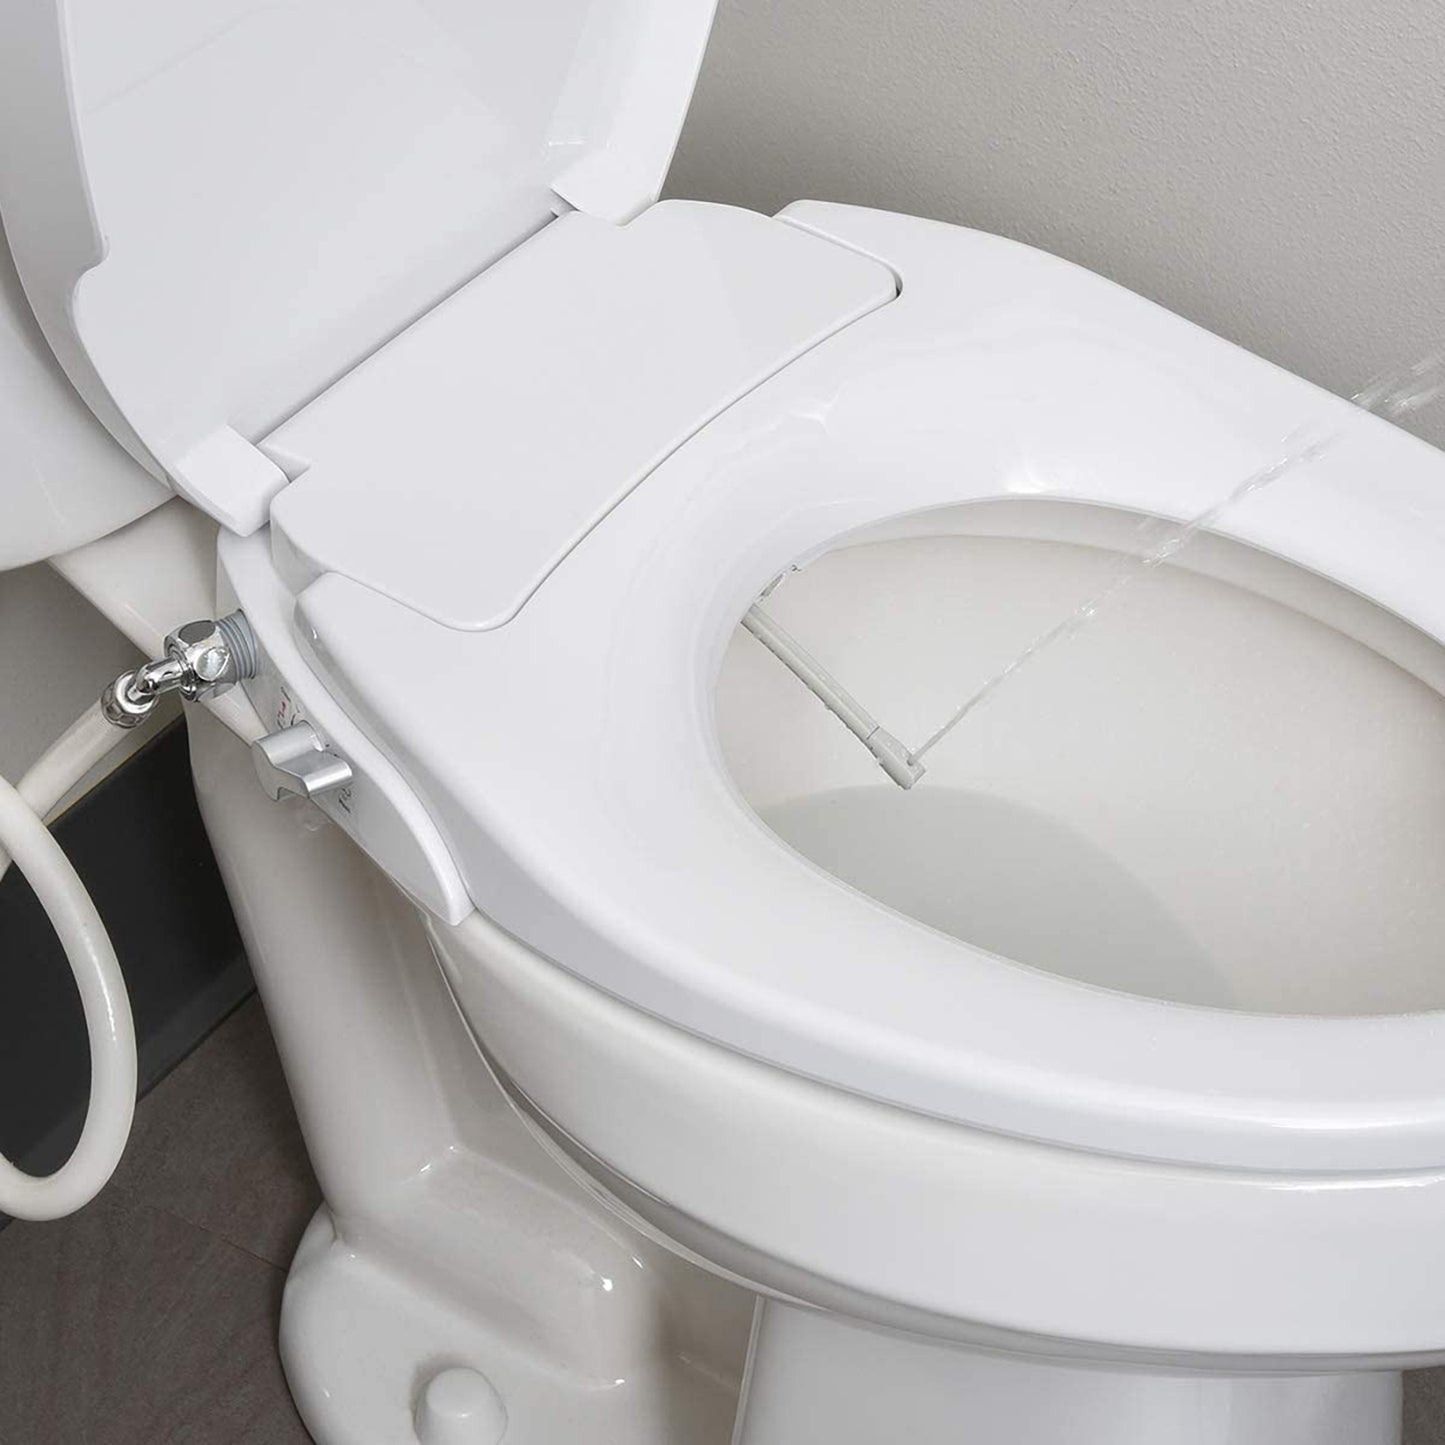 Hausen Non-Electric Bidet Toilet Seat, Round, White